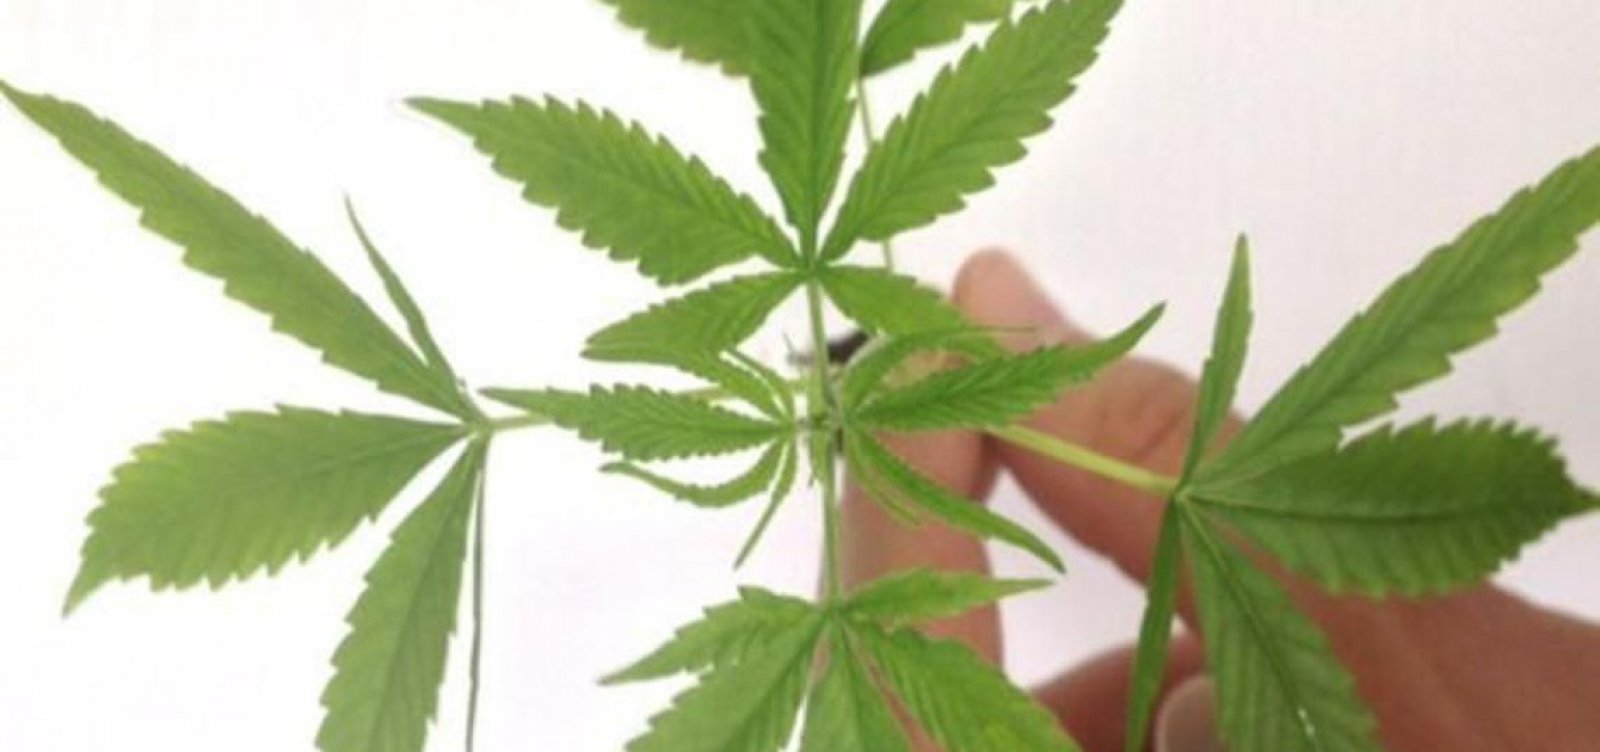 Substância da Cannabis tem proposta semelhante à de um medicamento, diz Anvisa